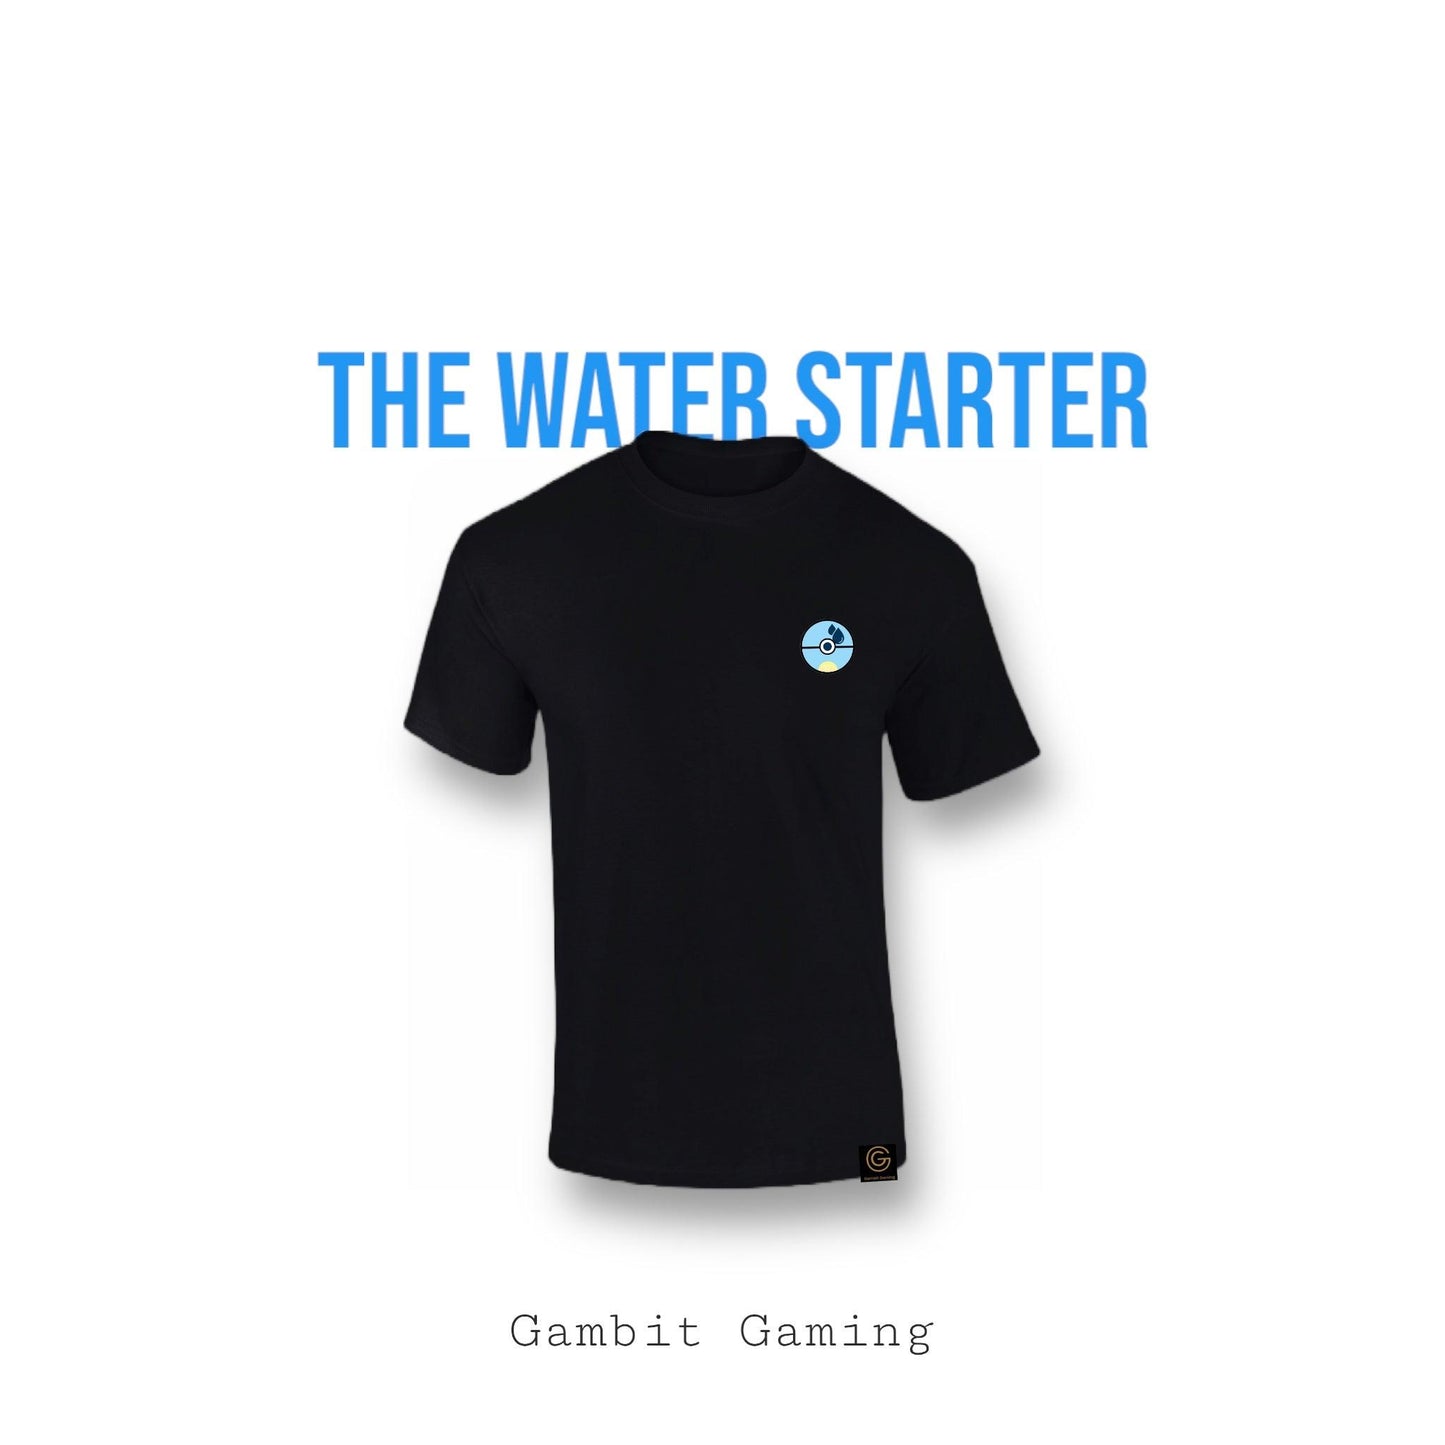 The Water Starter - Gambit Gaming